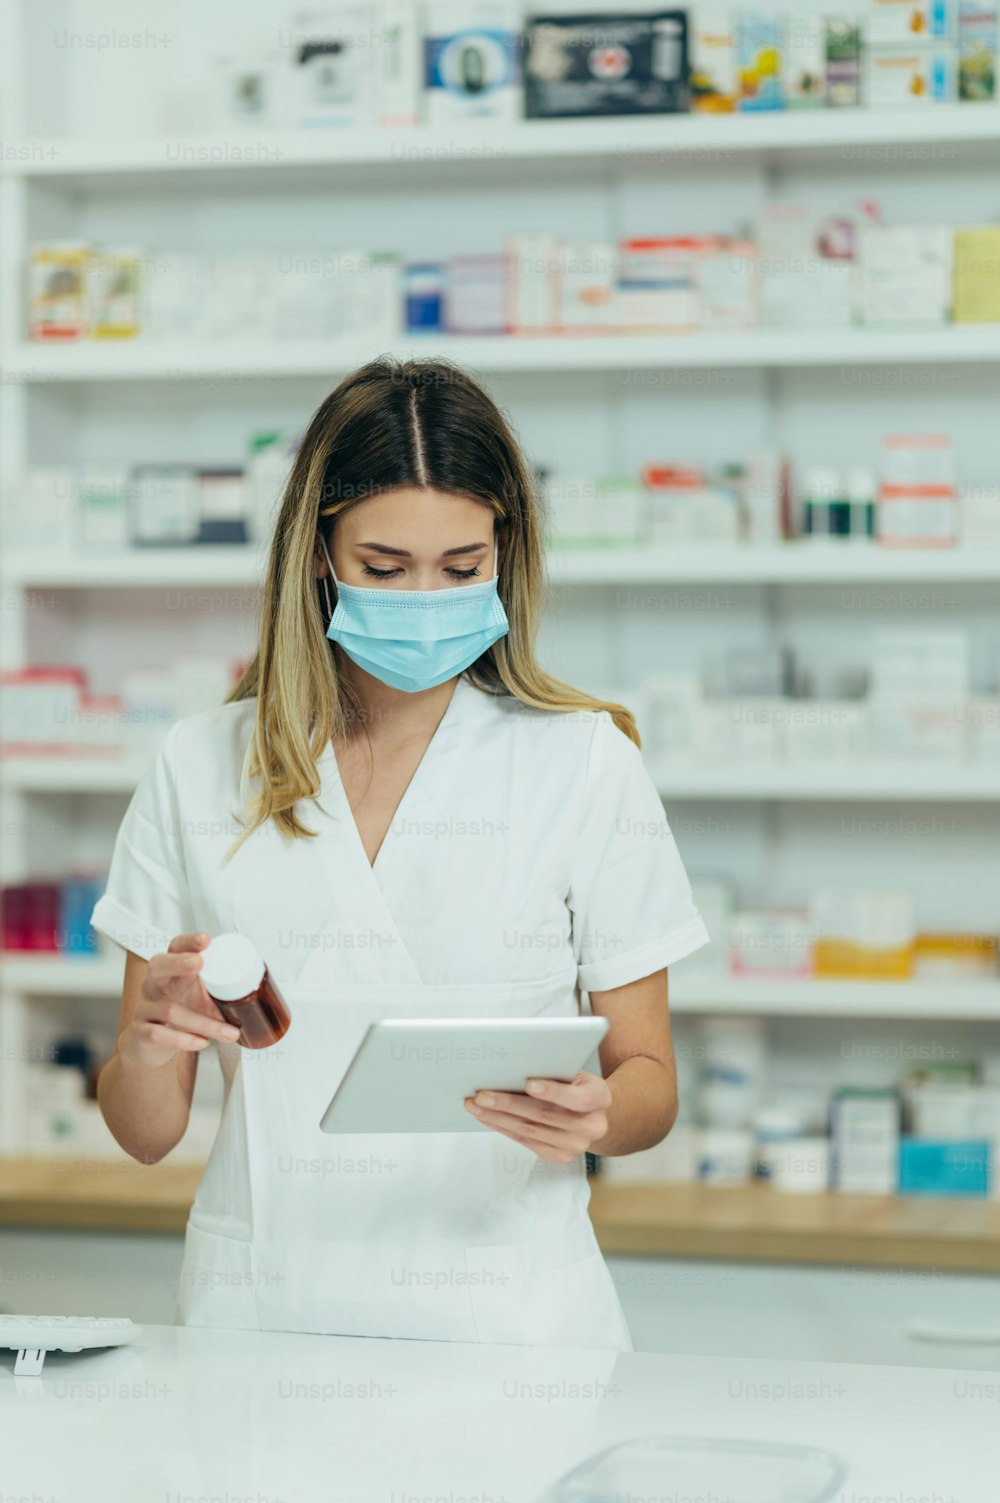 Hermosa farmacéutica con máscara protectora en la cara sosteniendo medicamentos y usando una tableta digital mientras trabaja en una farmacia